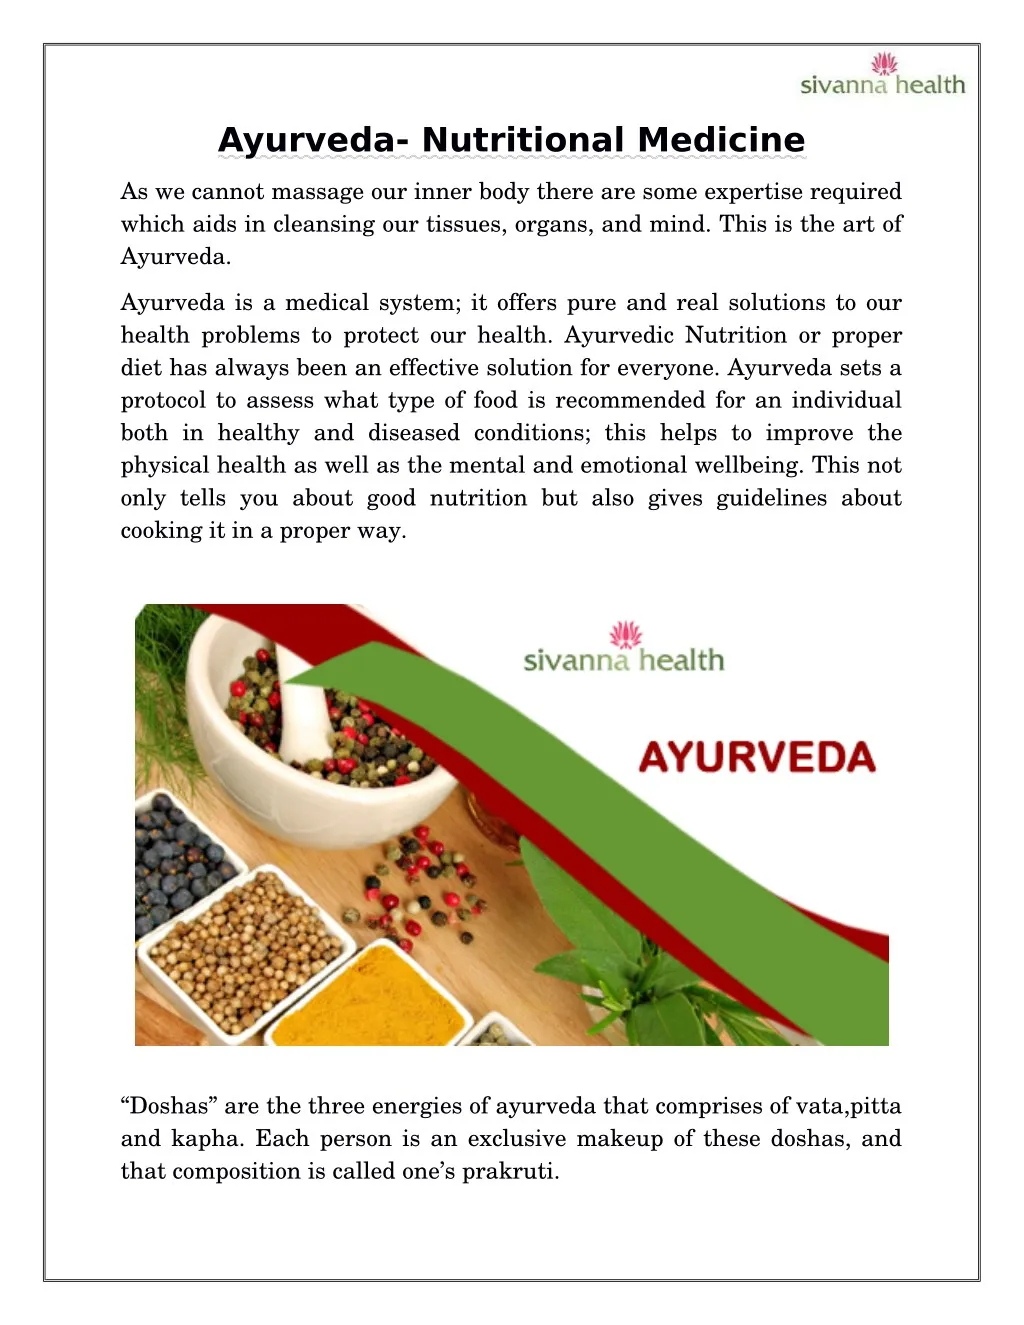 ayurveda nutritional medicine